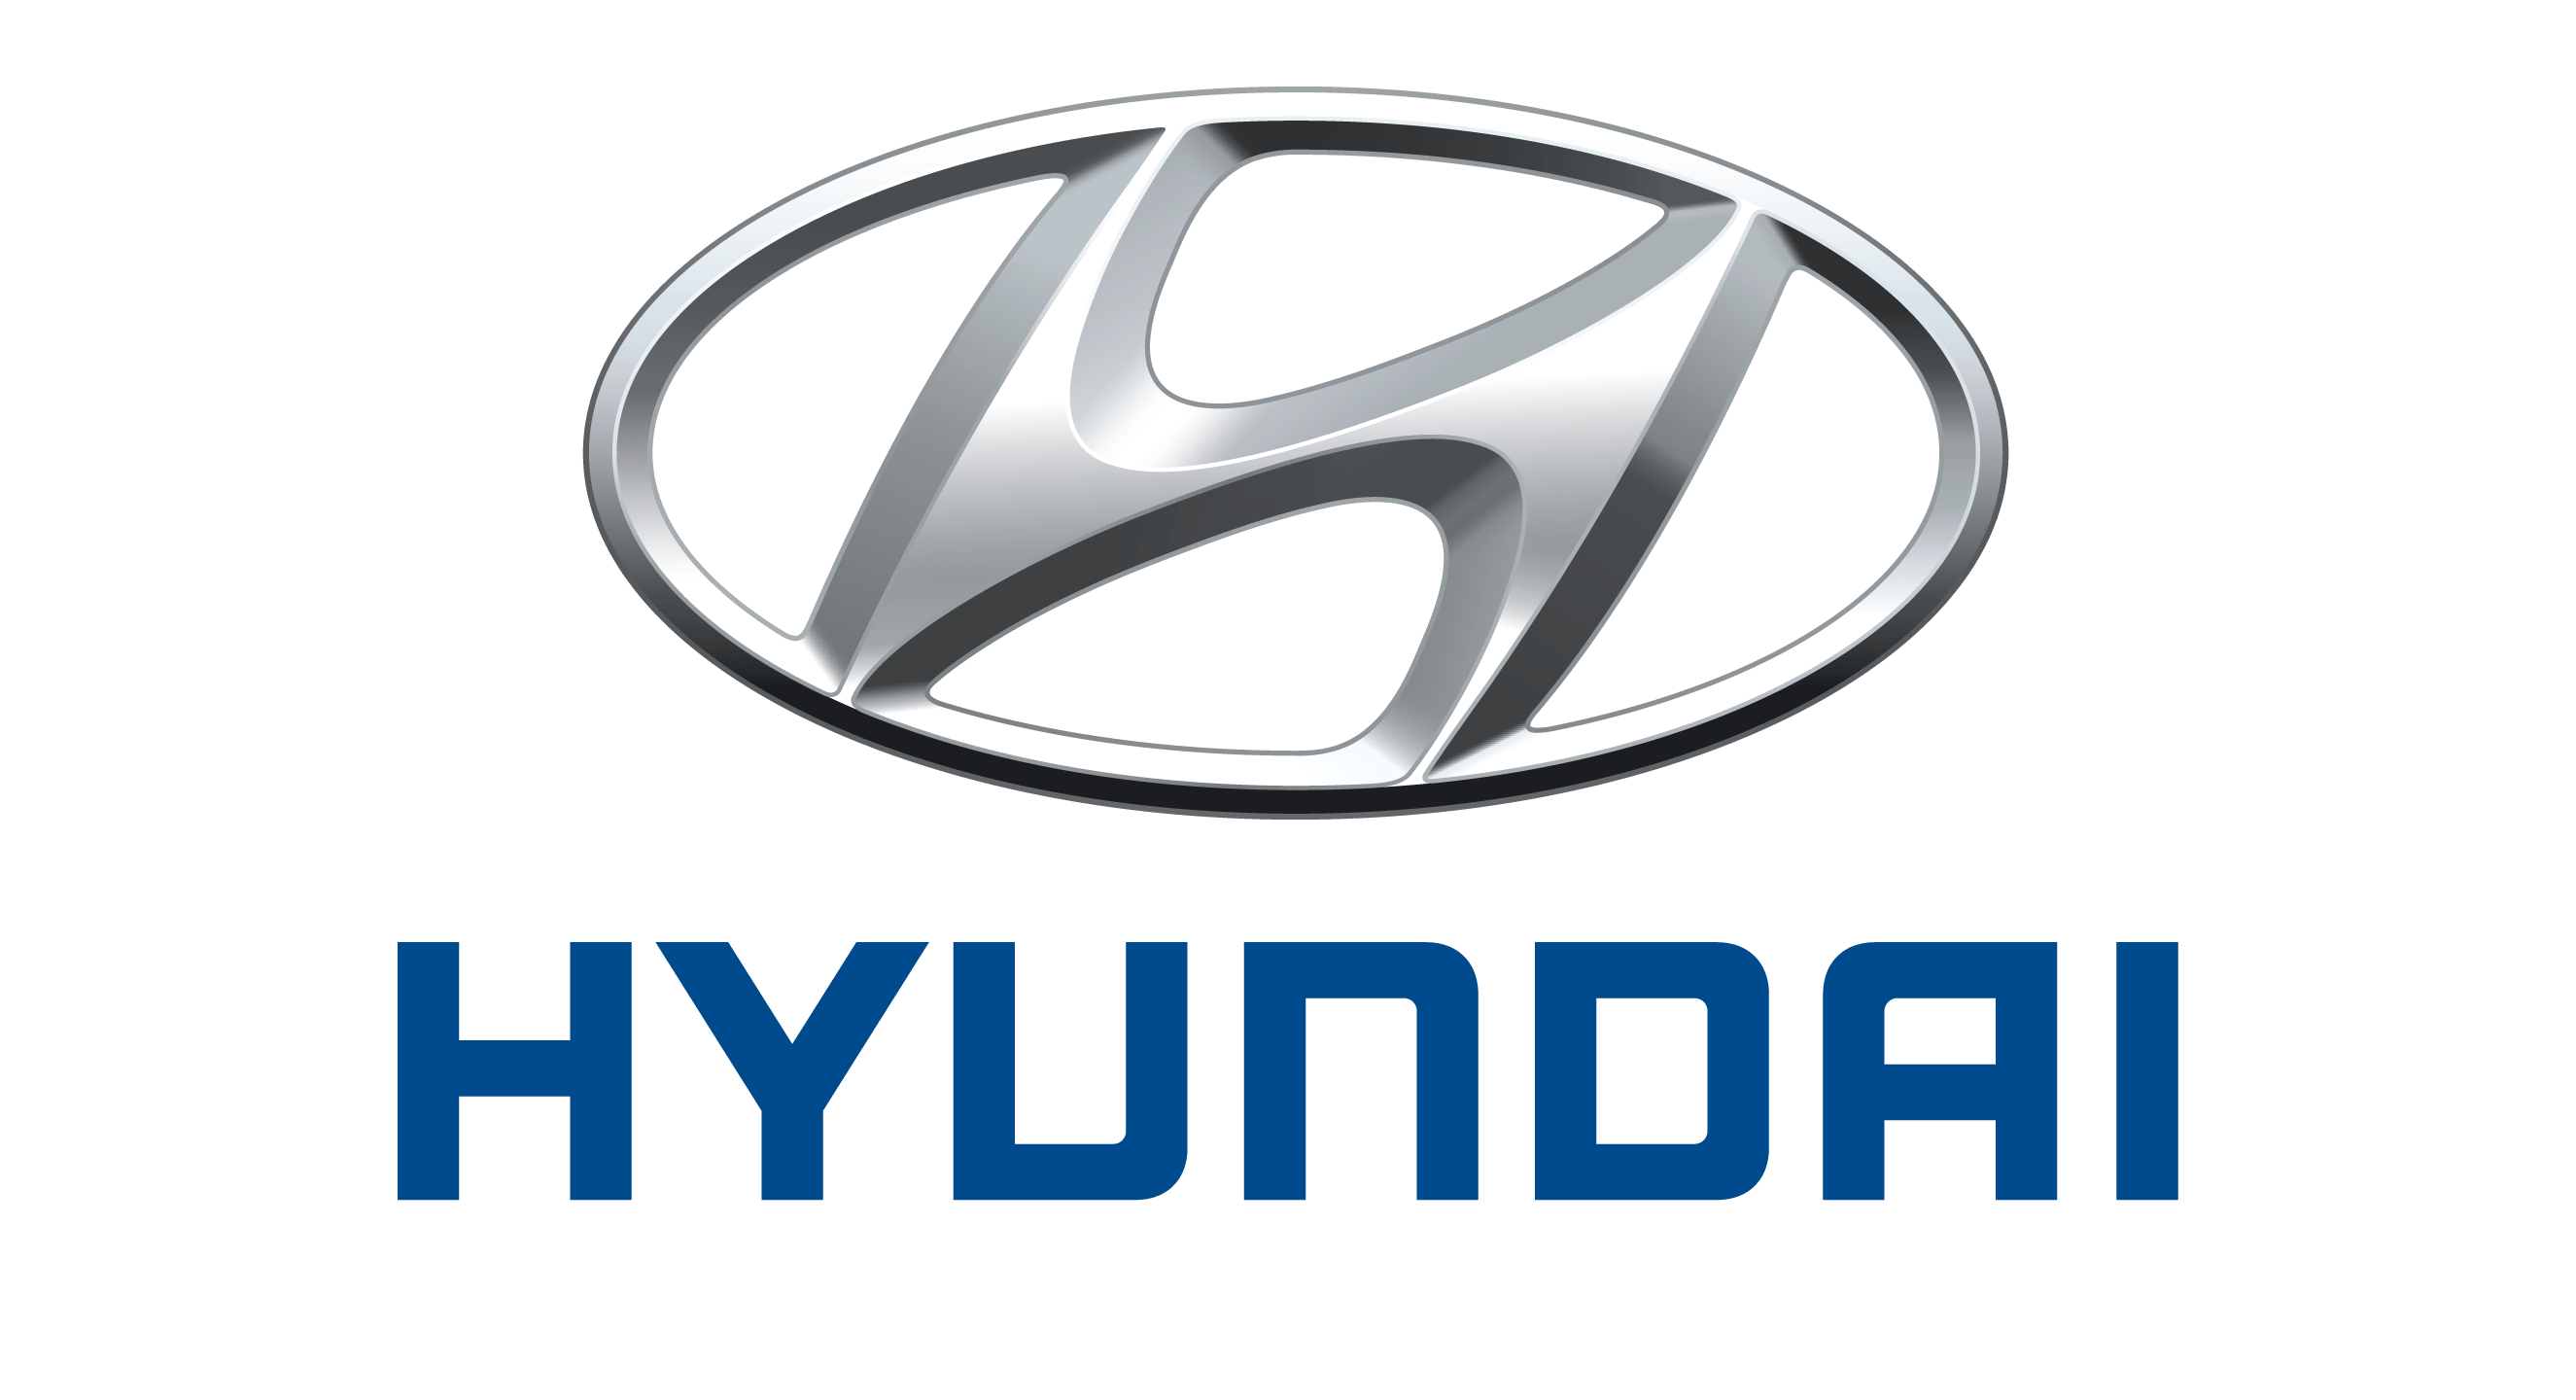 Serwis Hyundai Korea Motors Kraków